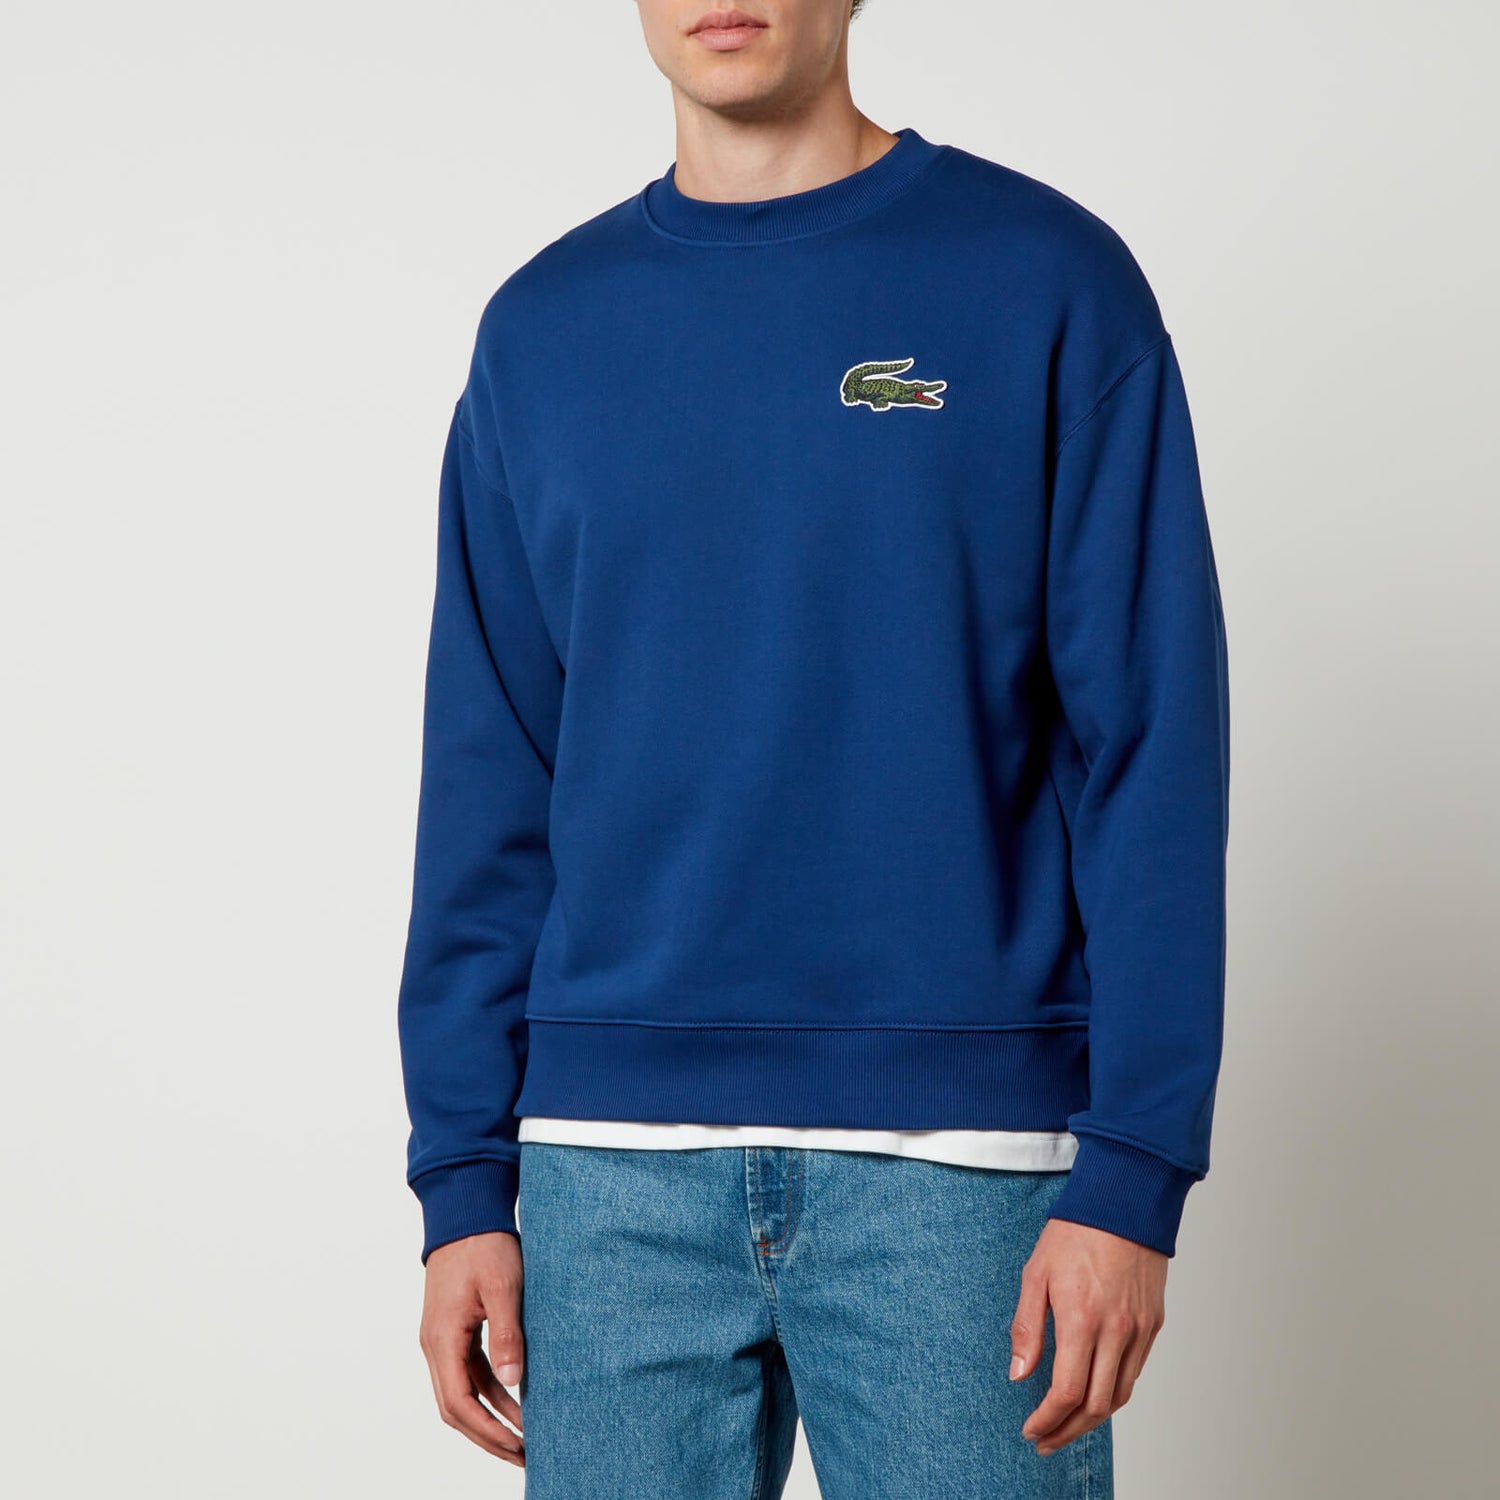 Lacoste DO Croc 80's Cotton Sweatshirt - XL